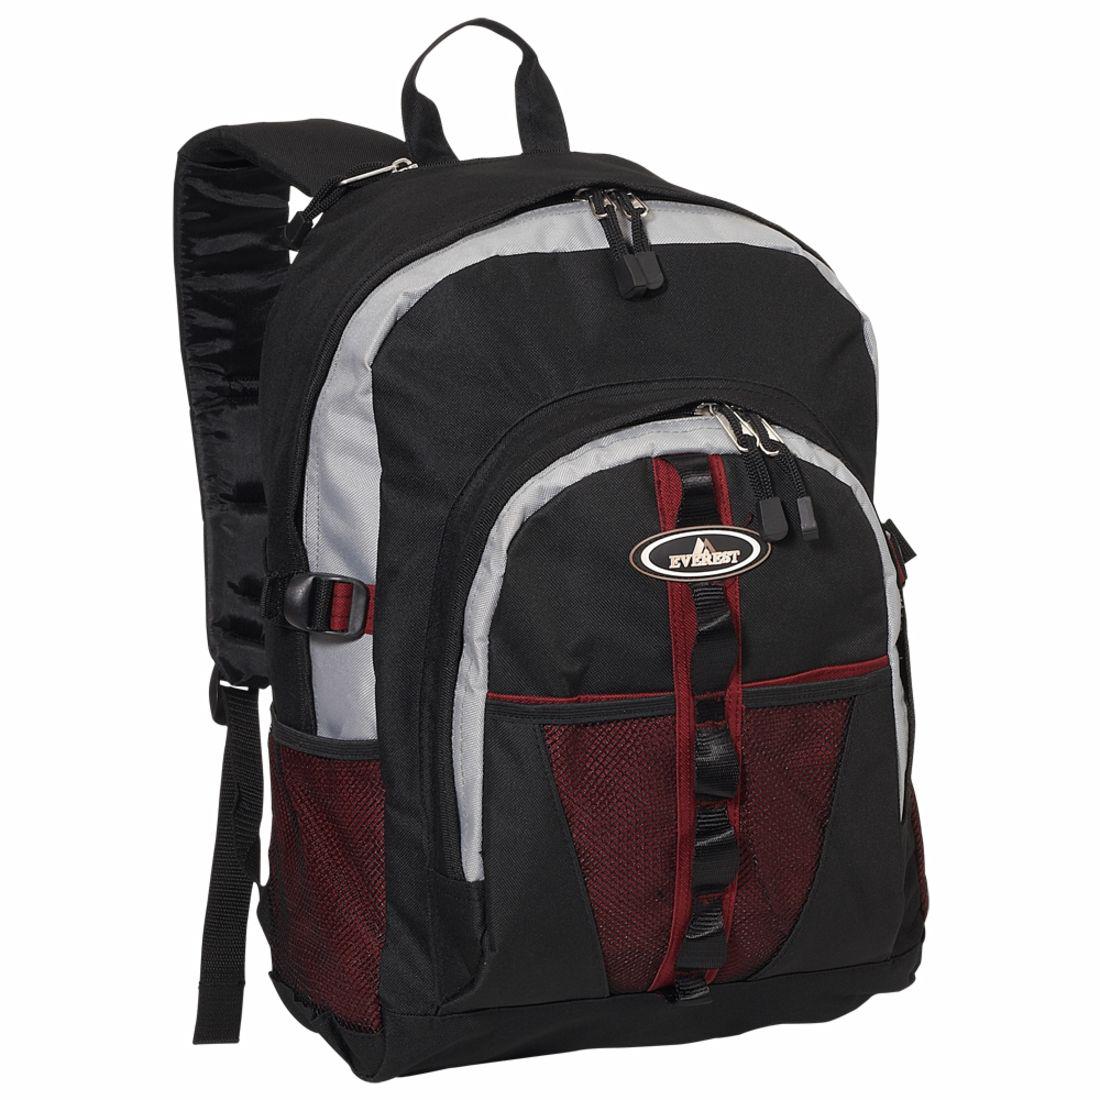 Everest Backpack w/ Dual Mesh Pocket 